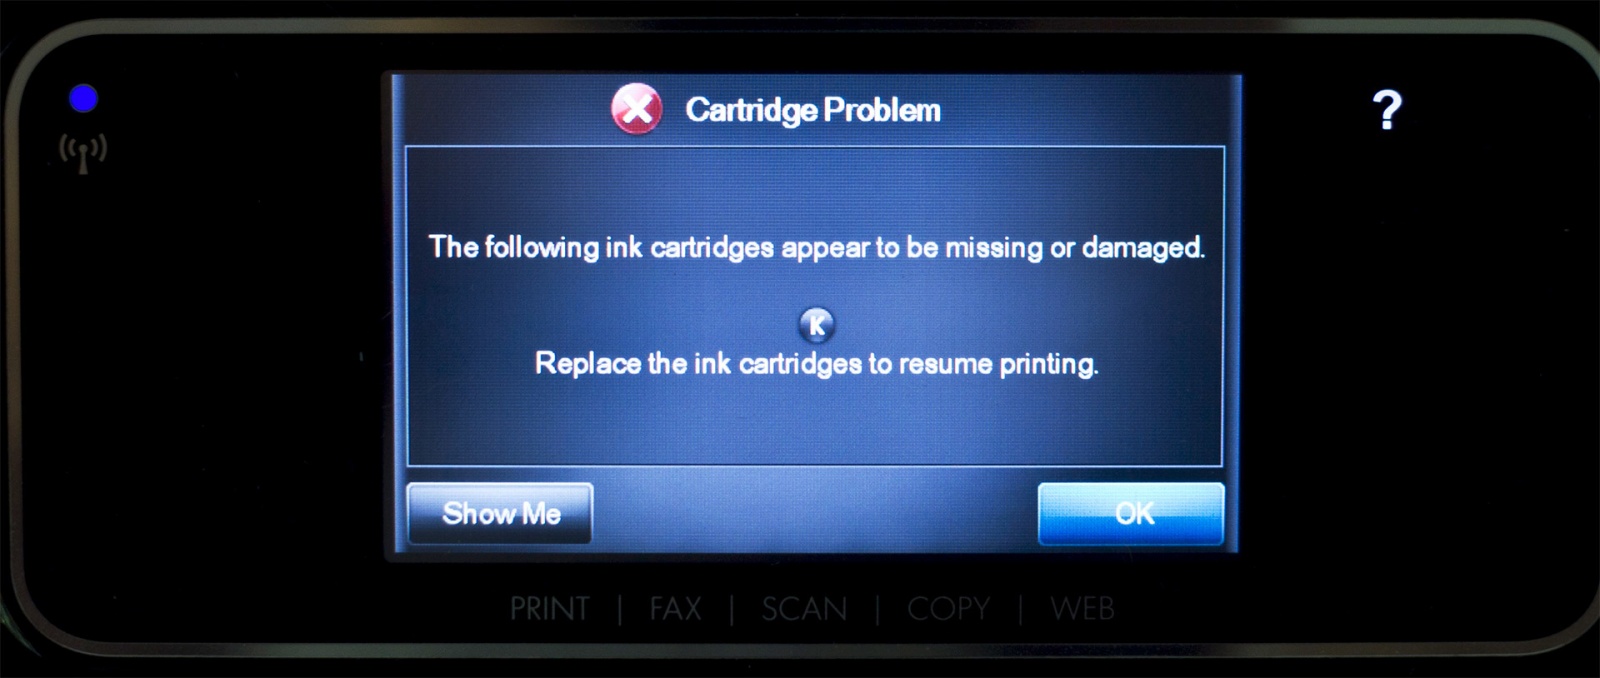 Современные принтеры HP отказываются работать без подписки на чернила - 5